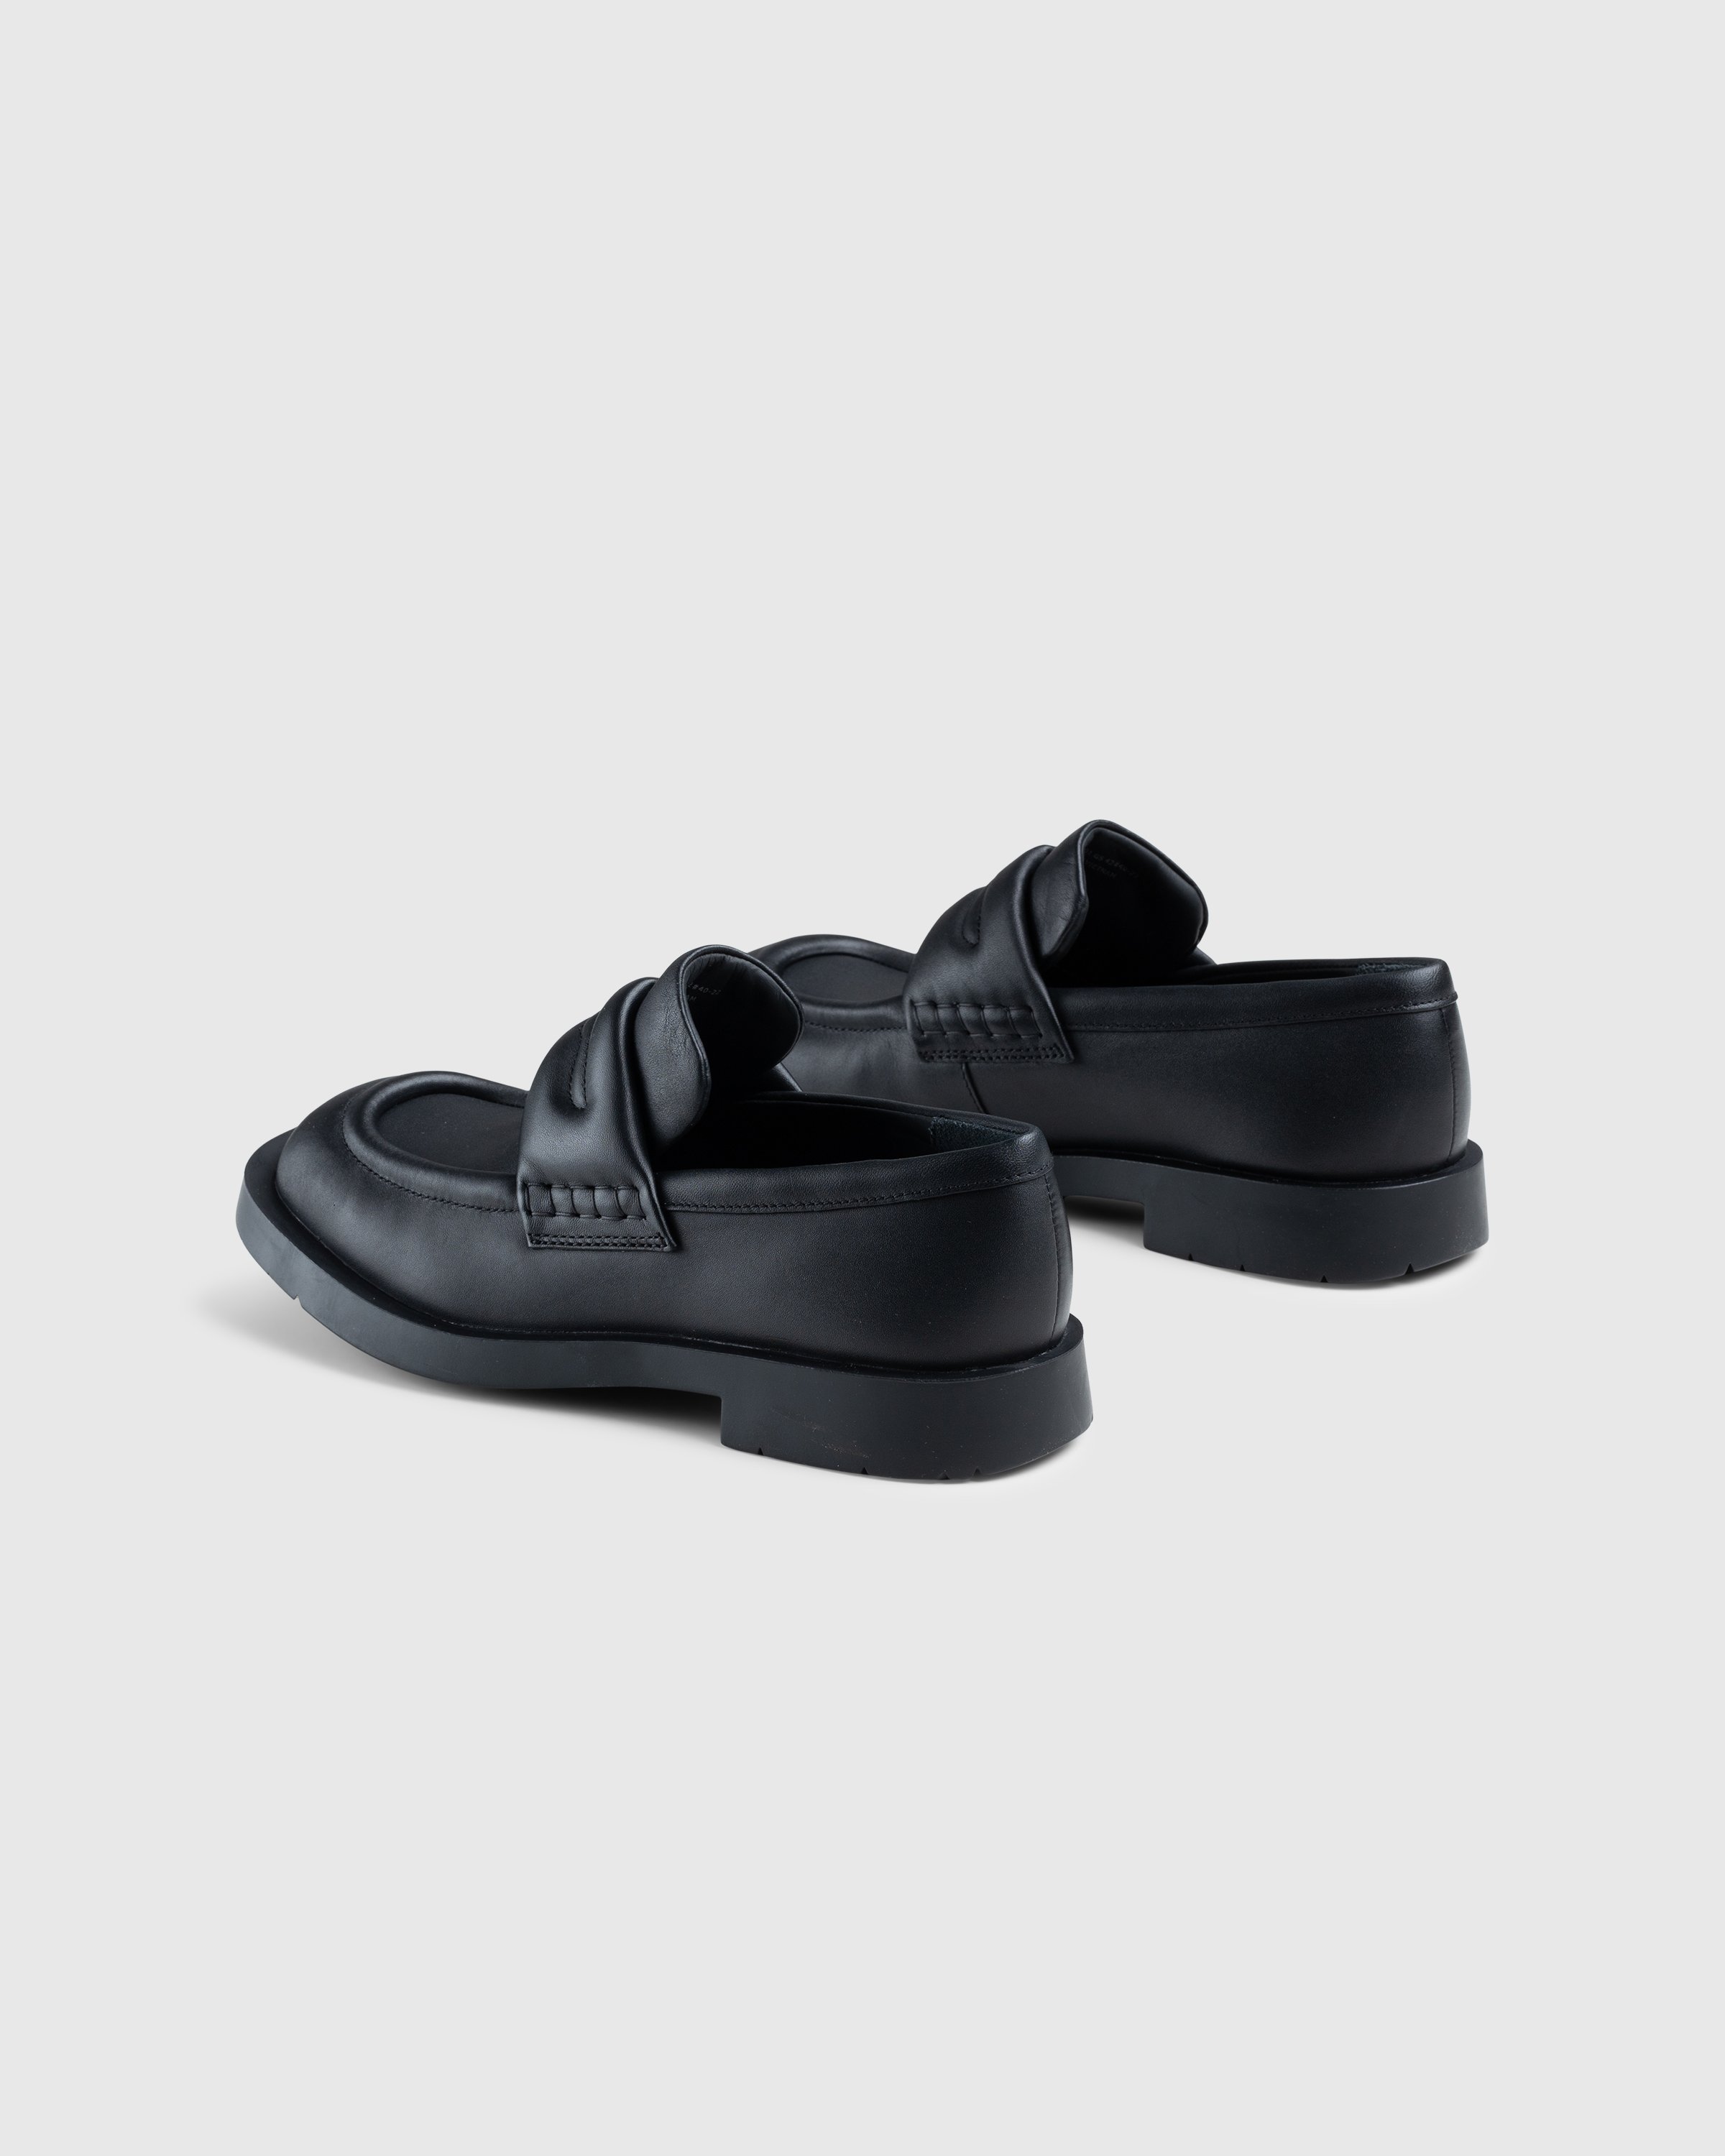 CAMPERLAB - MIL 1978 Loafer Black - Footwear - Black - Image 4